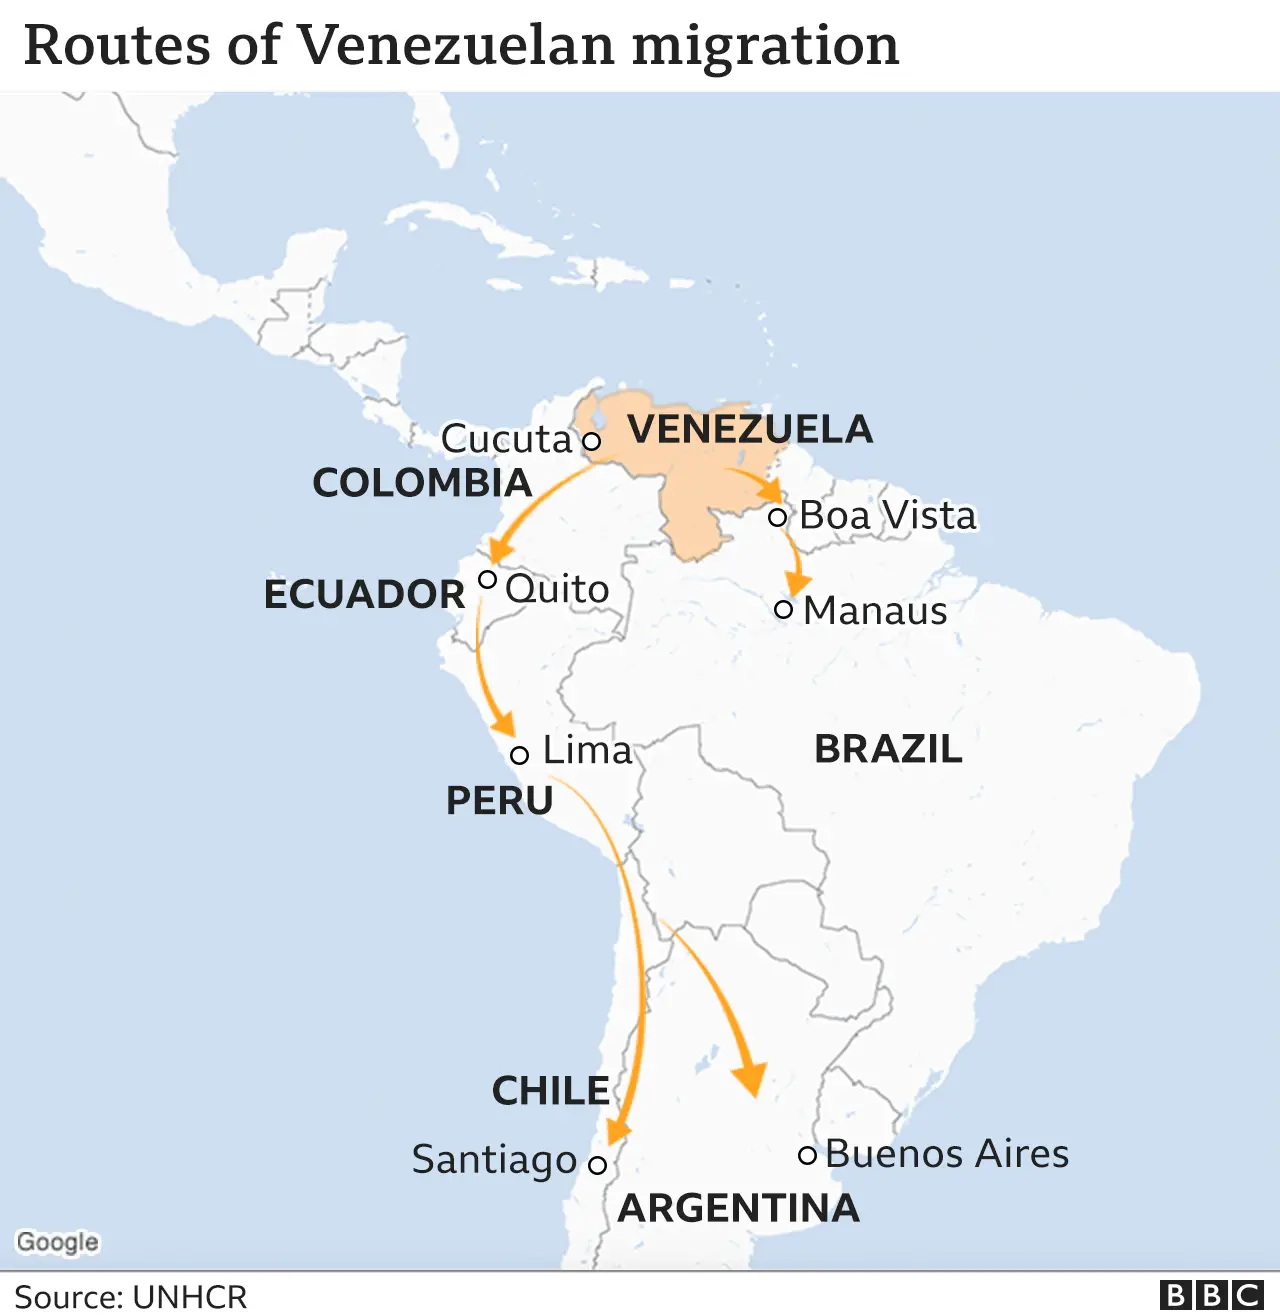  118479285 Venezuela Map Migration Routes V3 640 Nc .webp